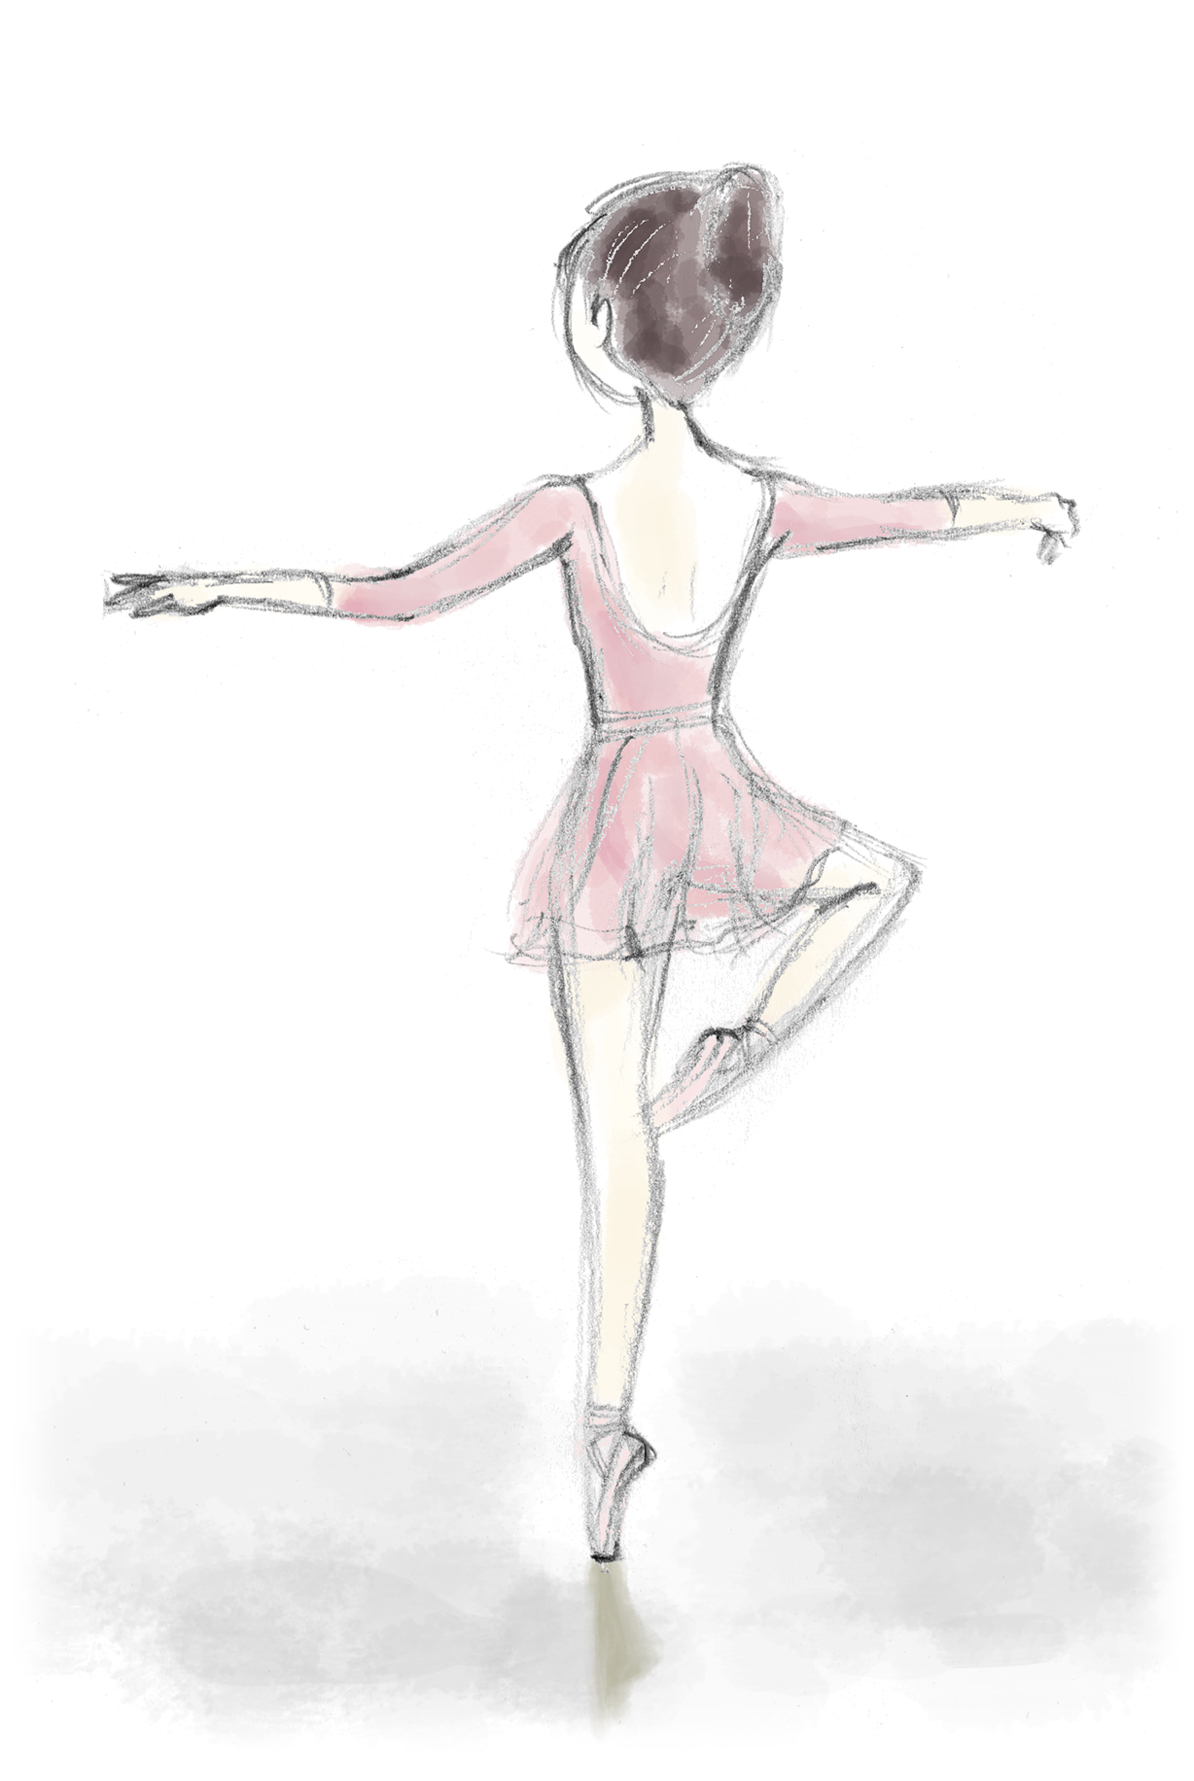 3か月前と今 Kayano Ballet Blog バレエ教師兼ダンサーが綴る 踊る心